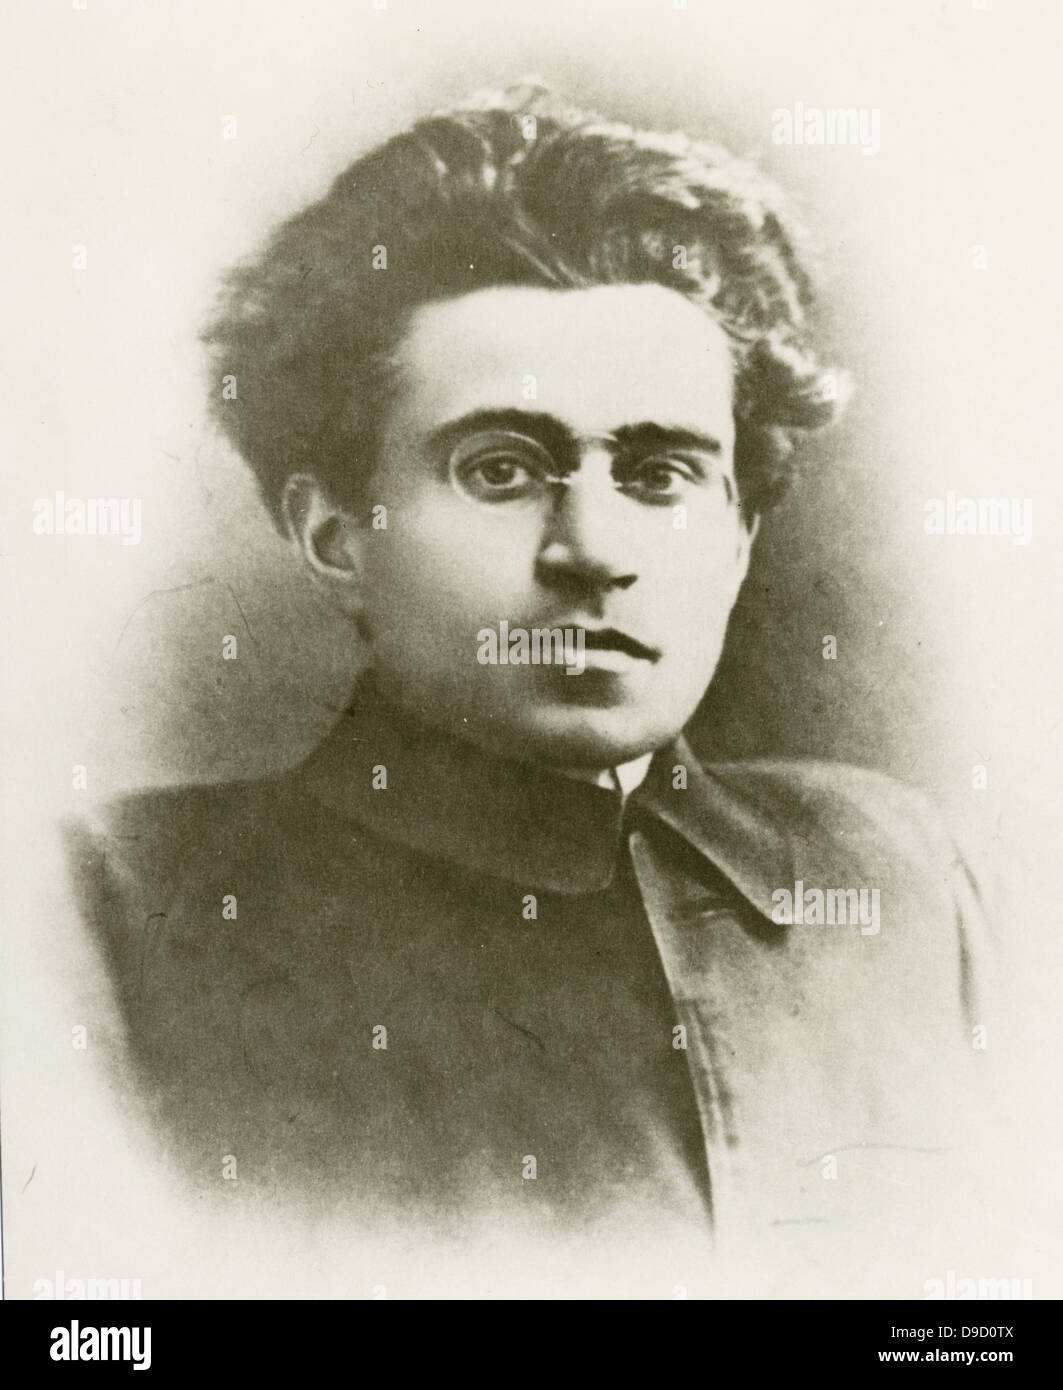 Antonio Gramsci (1891-1937), scrittrice italiana, filosofo politico, pensatore marxista, e il linguista. Membro fondatore e leader del Partito Comunista Italiano. Imprigionato da Benito Mussolinis regime fascista. Foto Stock